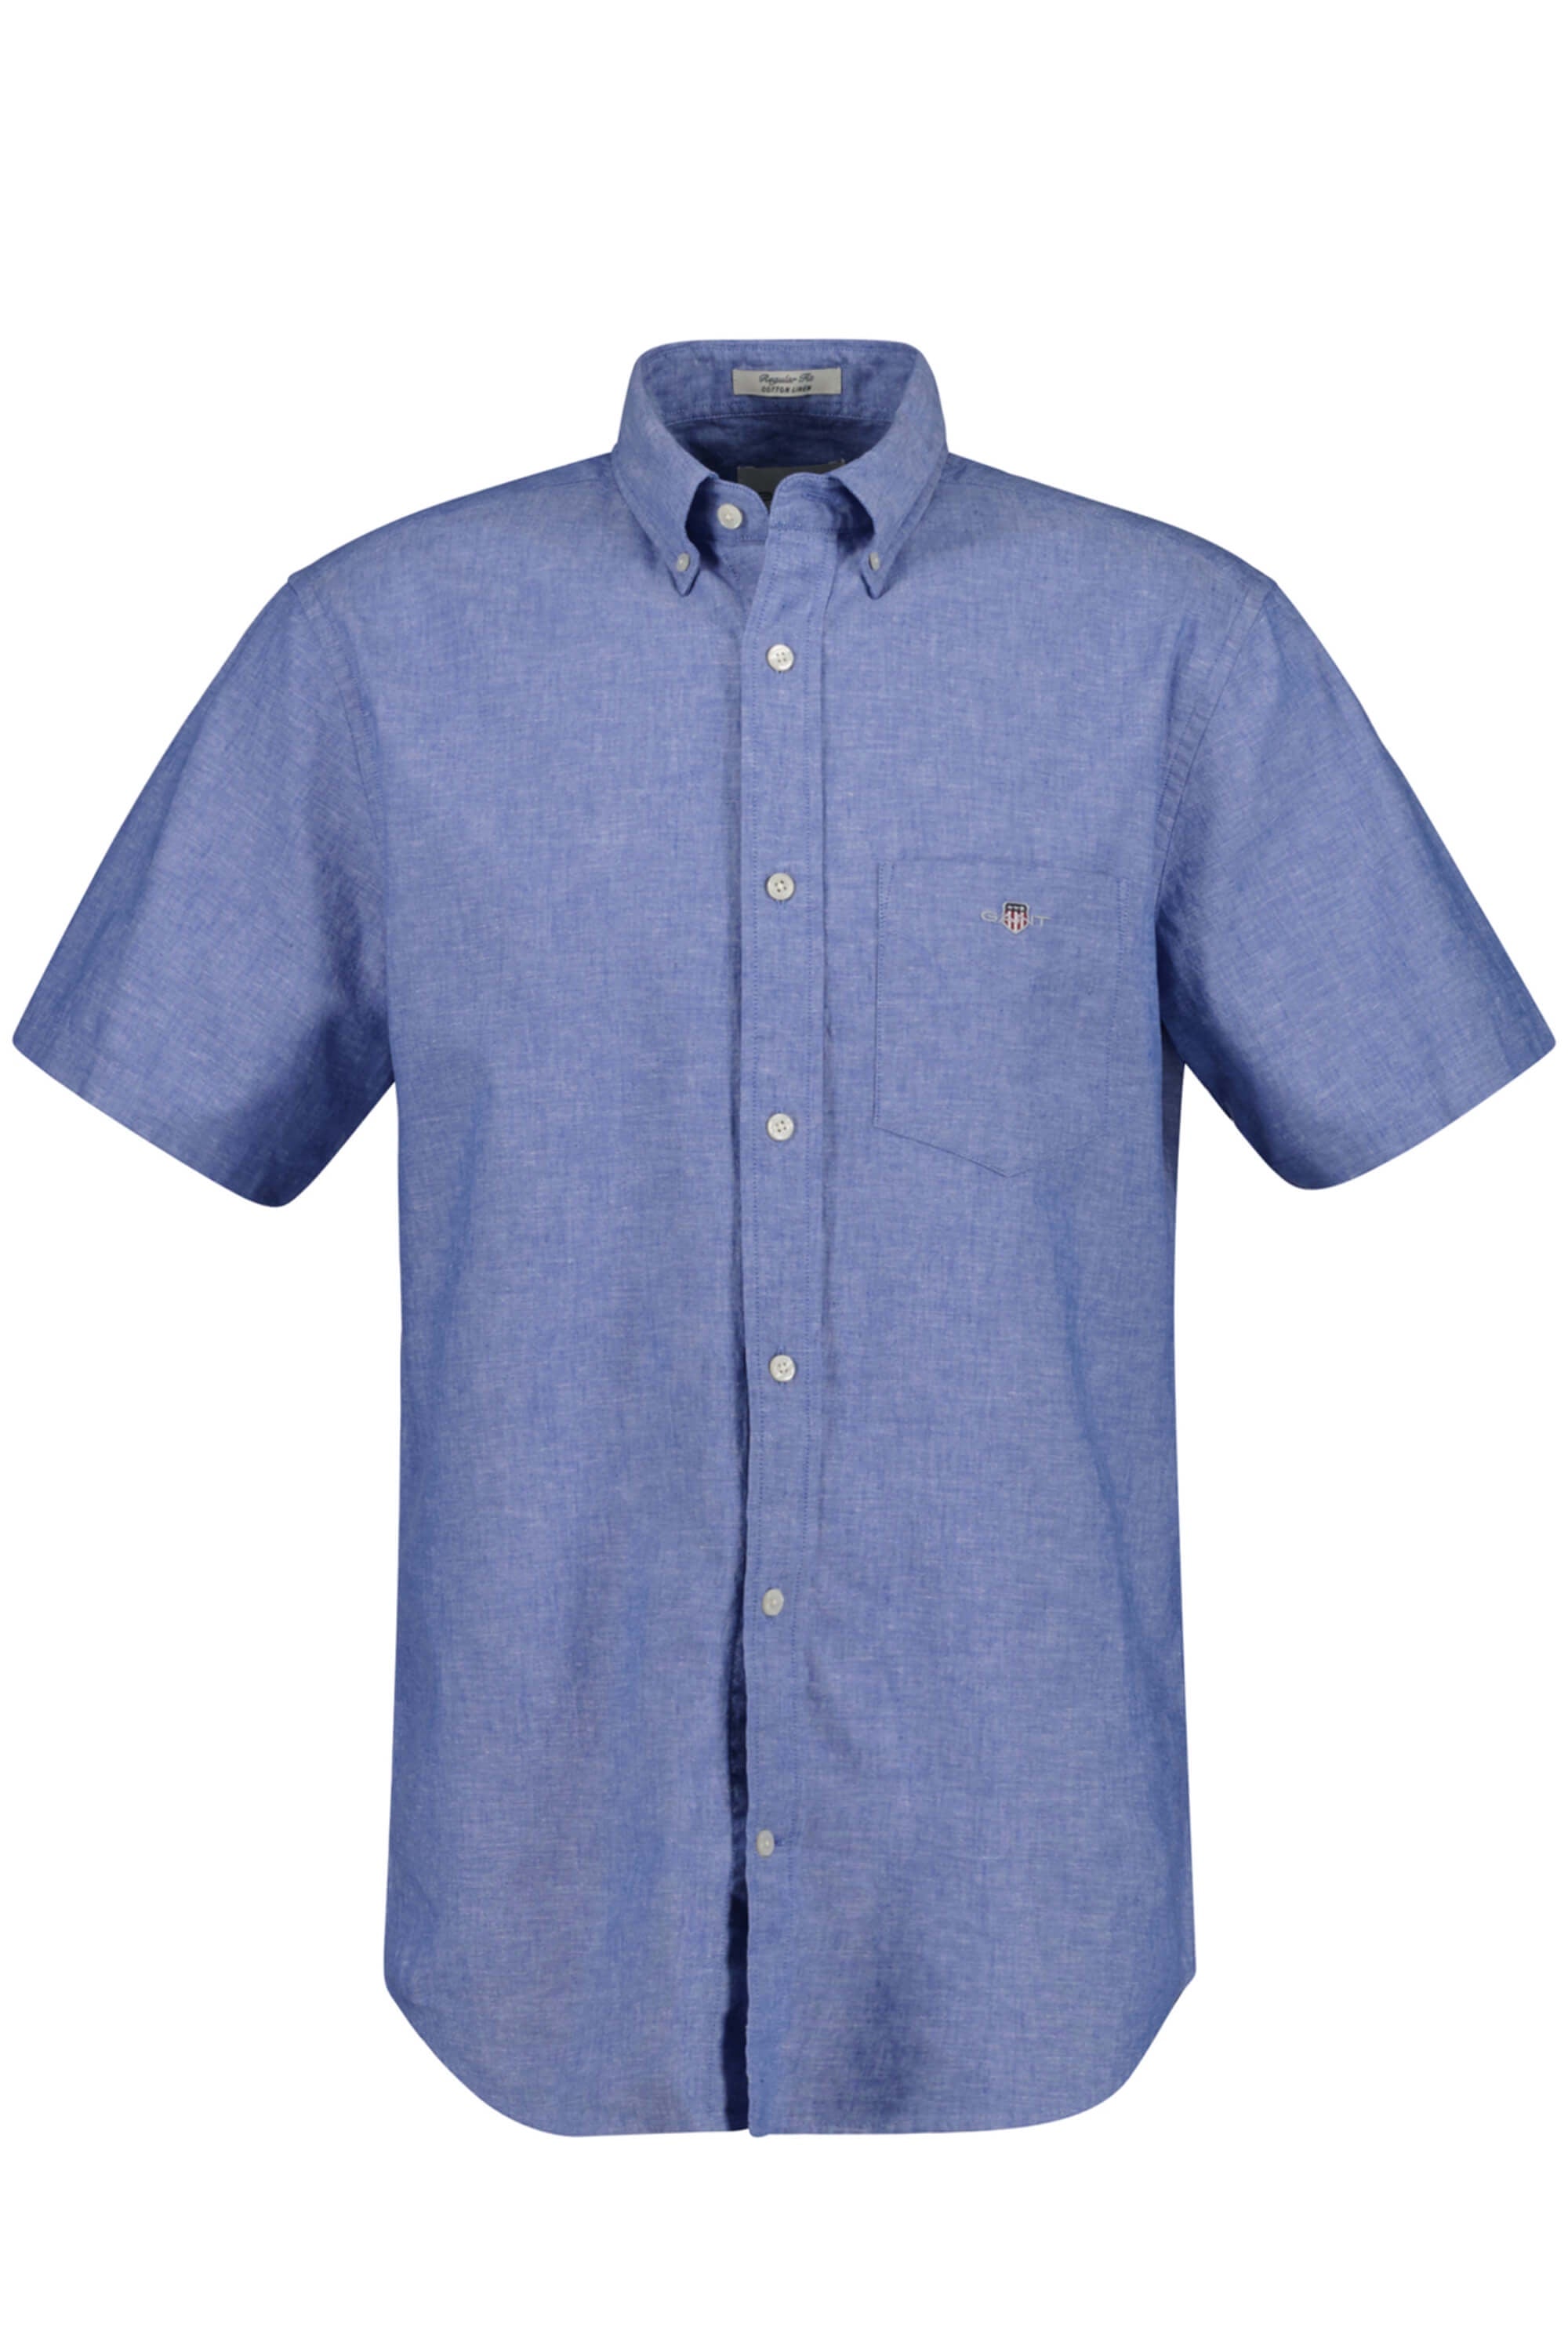 Gant Cotton Linen Shirt SS Rich Blue